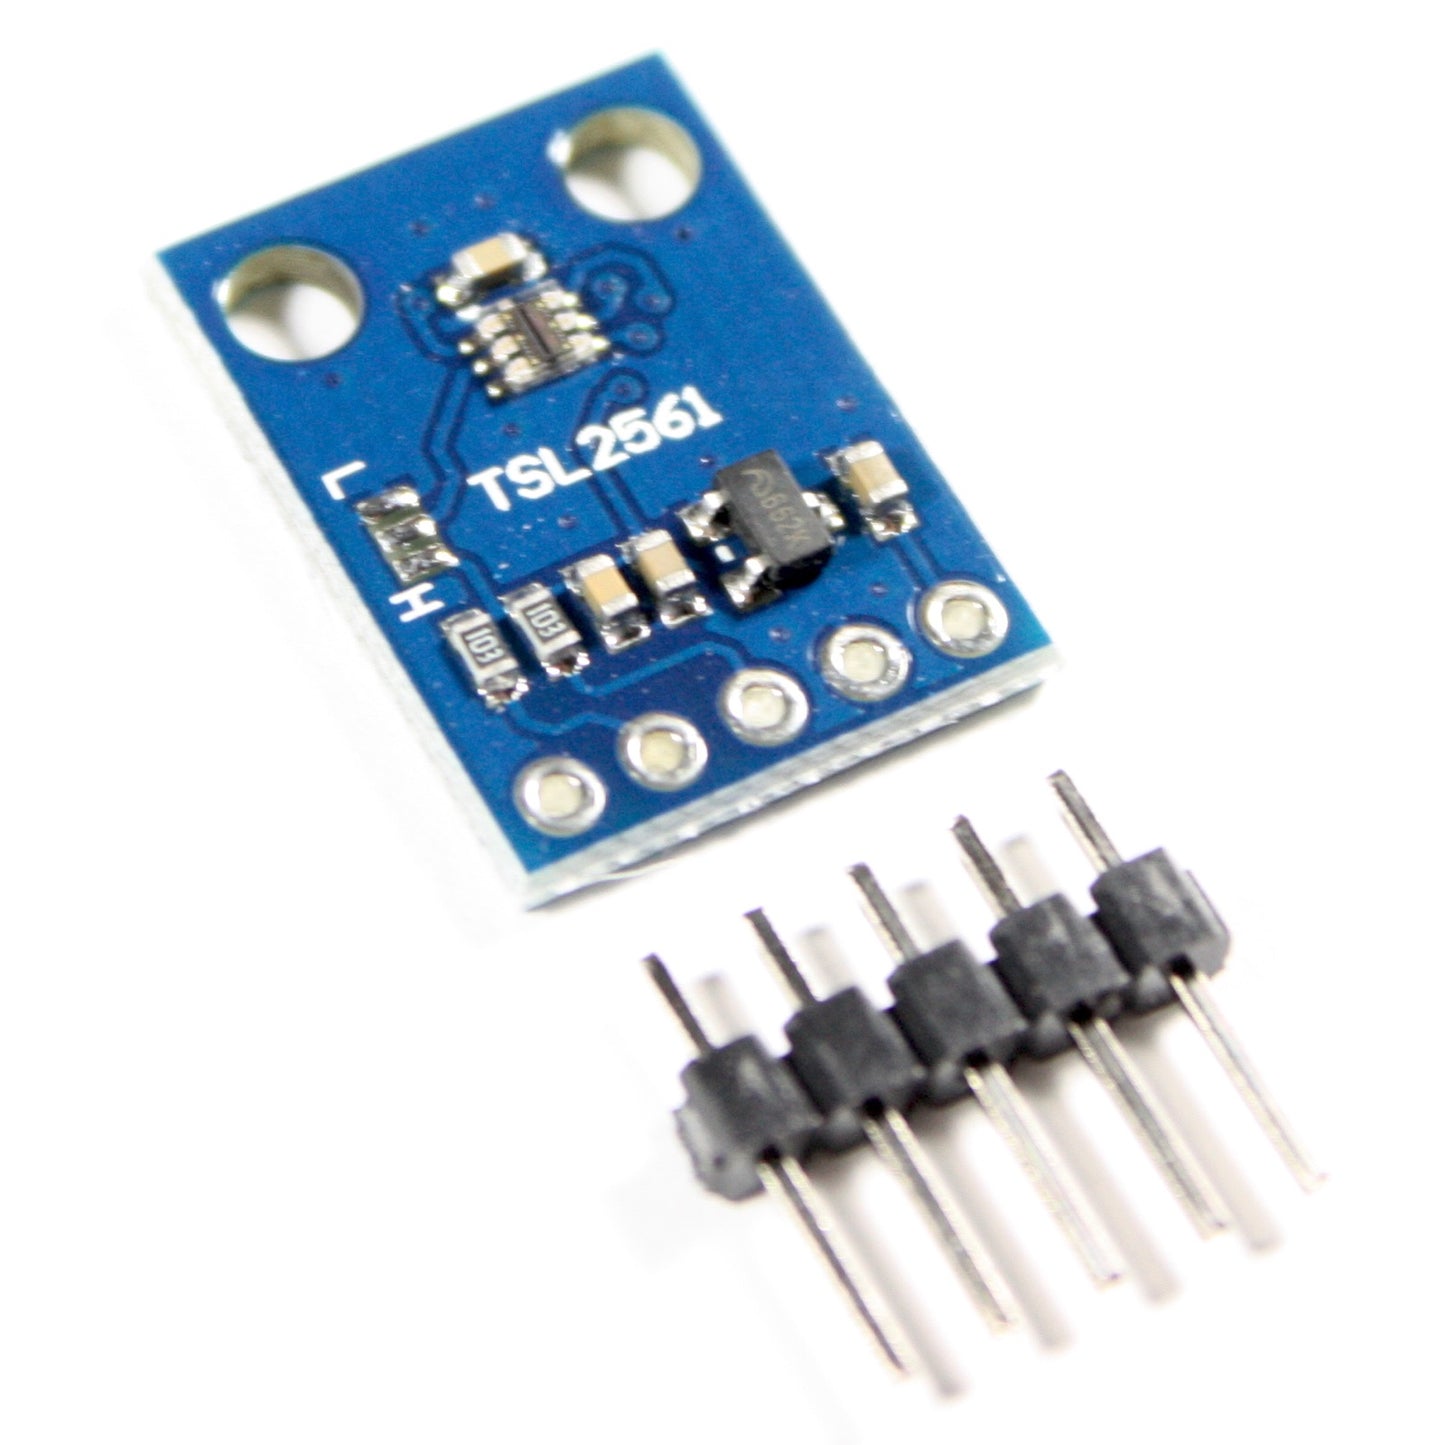 TSL2561 Lichtsensor-Modul, I2C